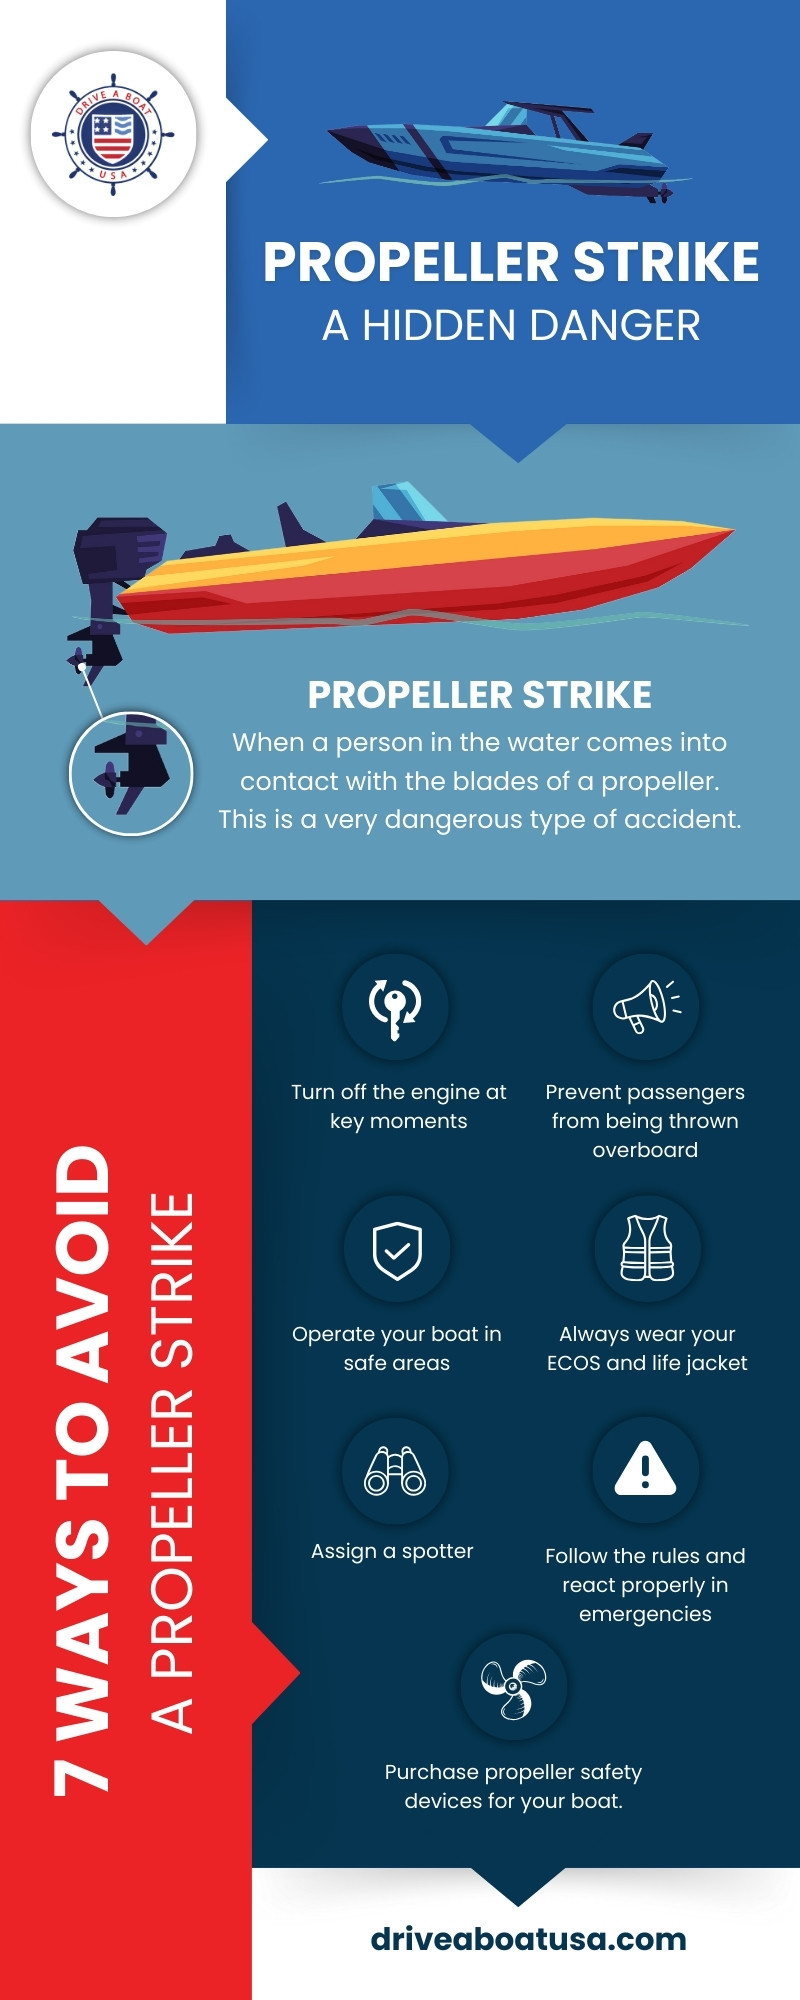 How-to-prevent-propeller-strike